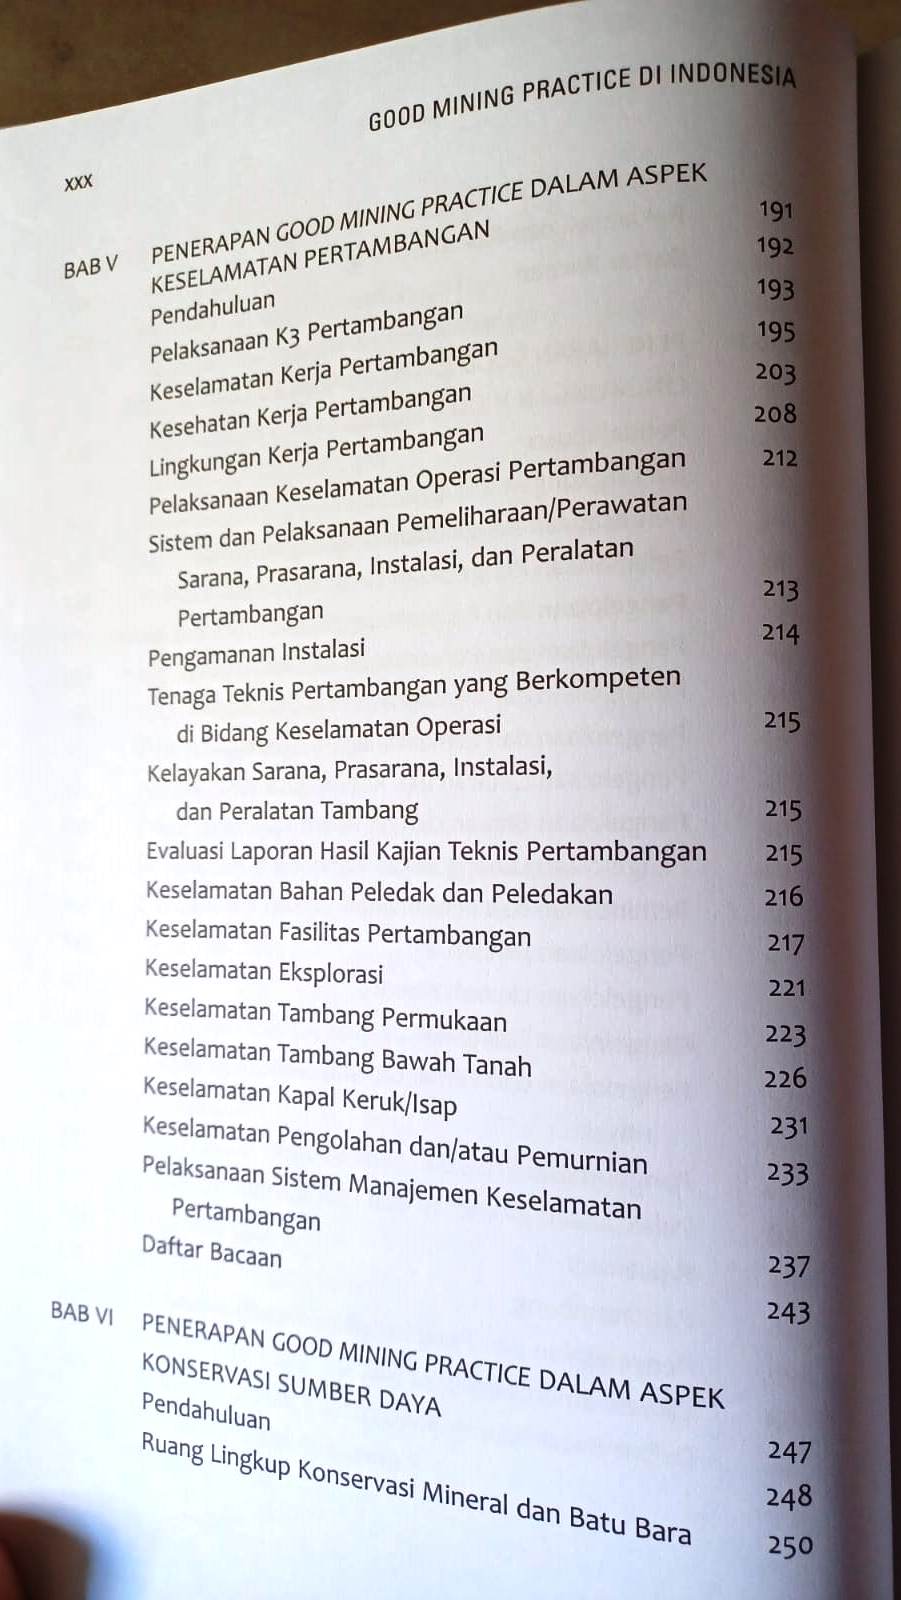 Daftar Isi Buku Good Mining Practice di Indonesia Karya Irwandy Arif Penerbit Gramedia